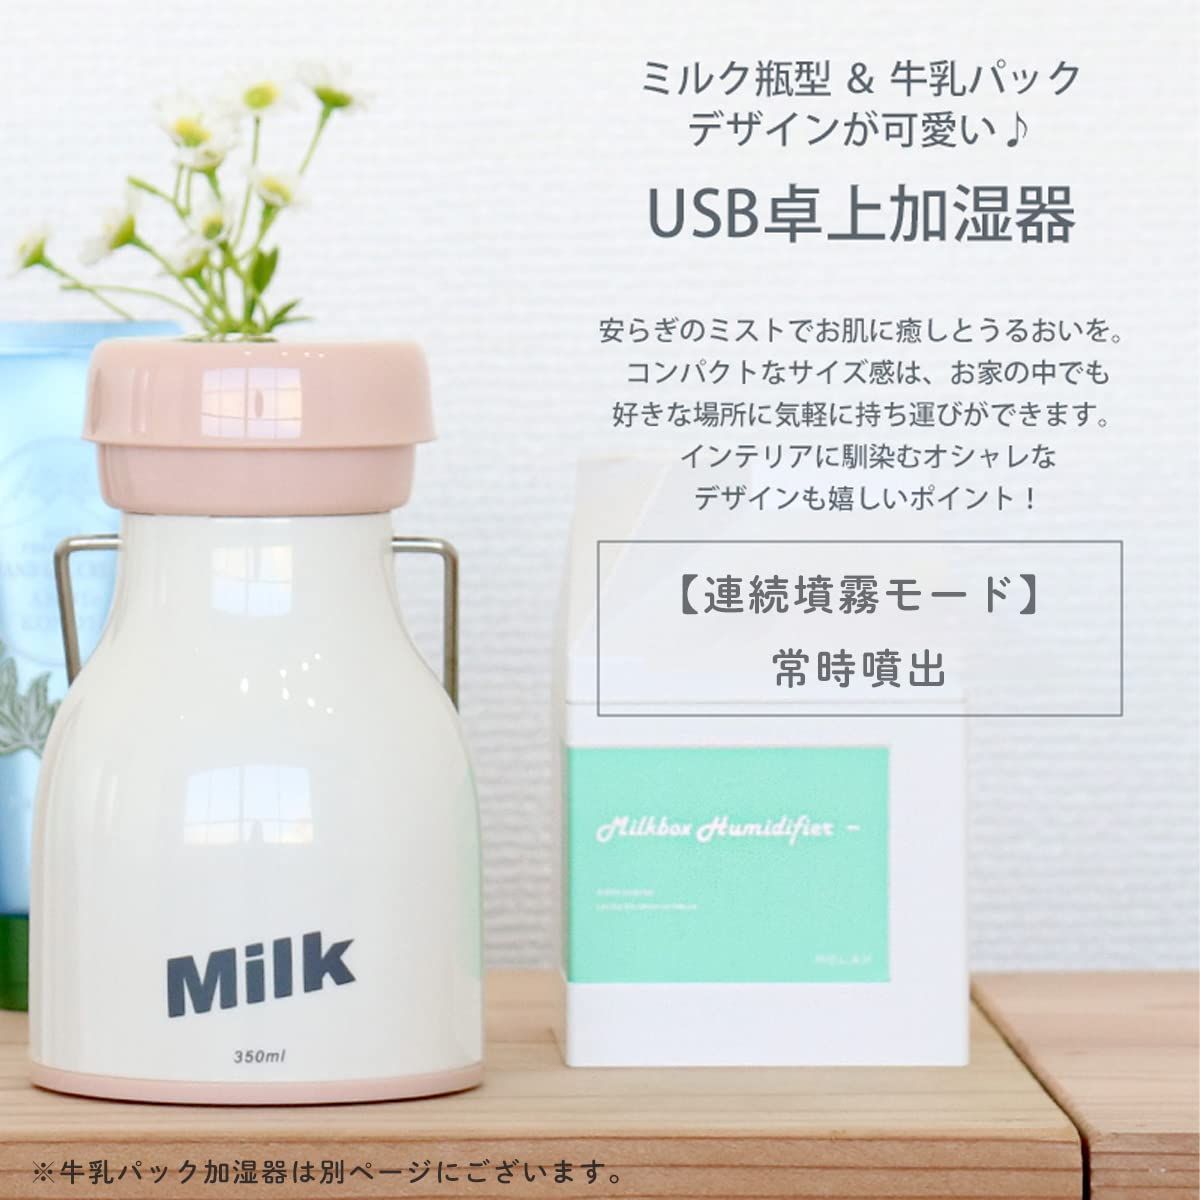 ☆数量限定☆】【リラックス】 RELAX MILK BOTTLE Humidifier ミルク